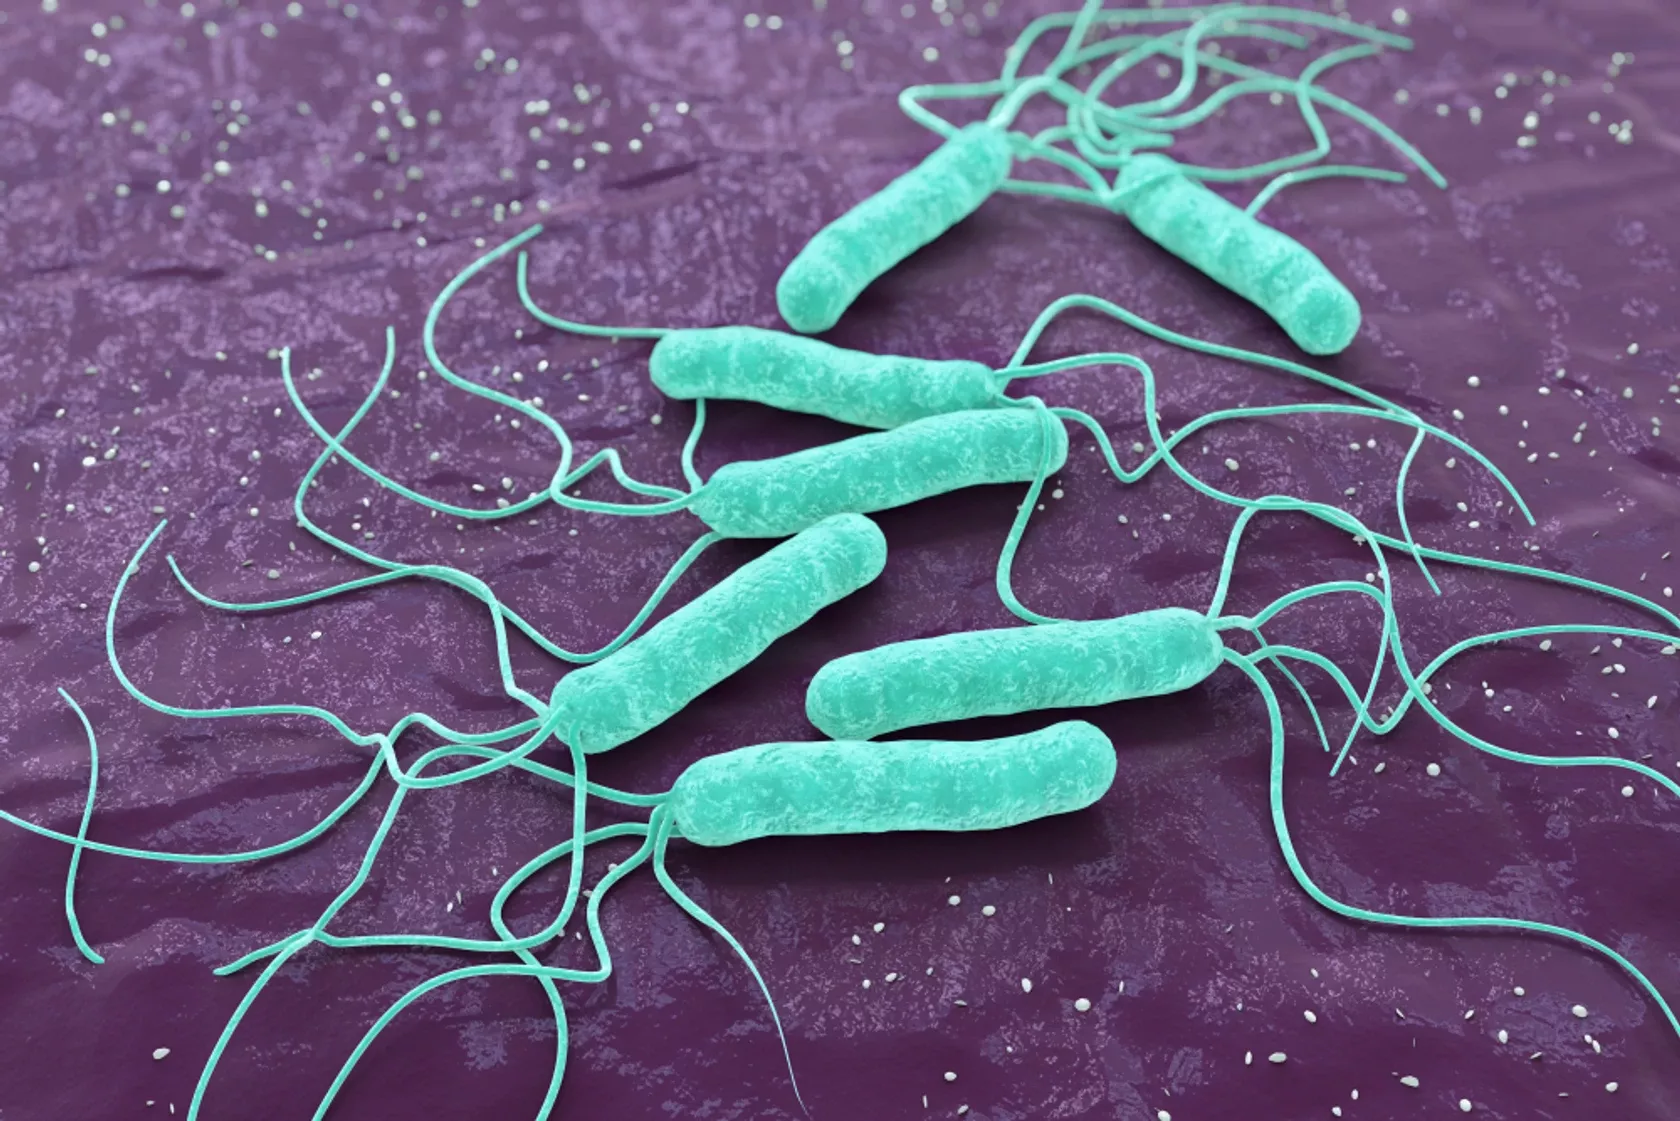 3D-Render von Helicobater pylori Bakterien, die vielfache Beschwerden verursachen.